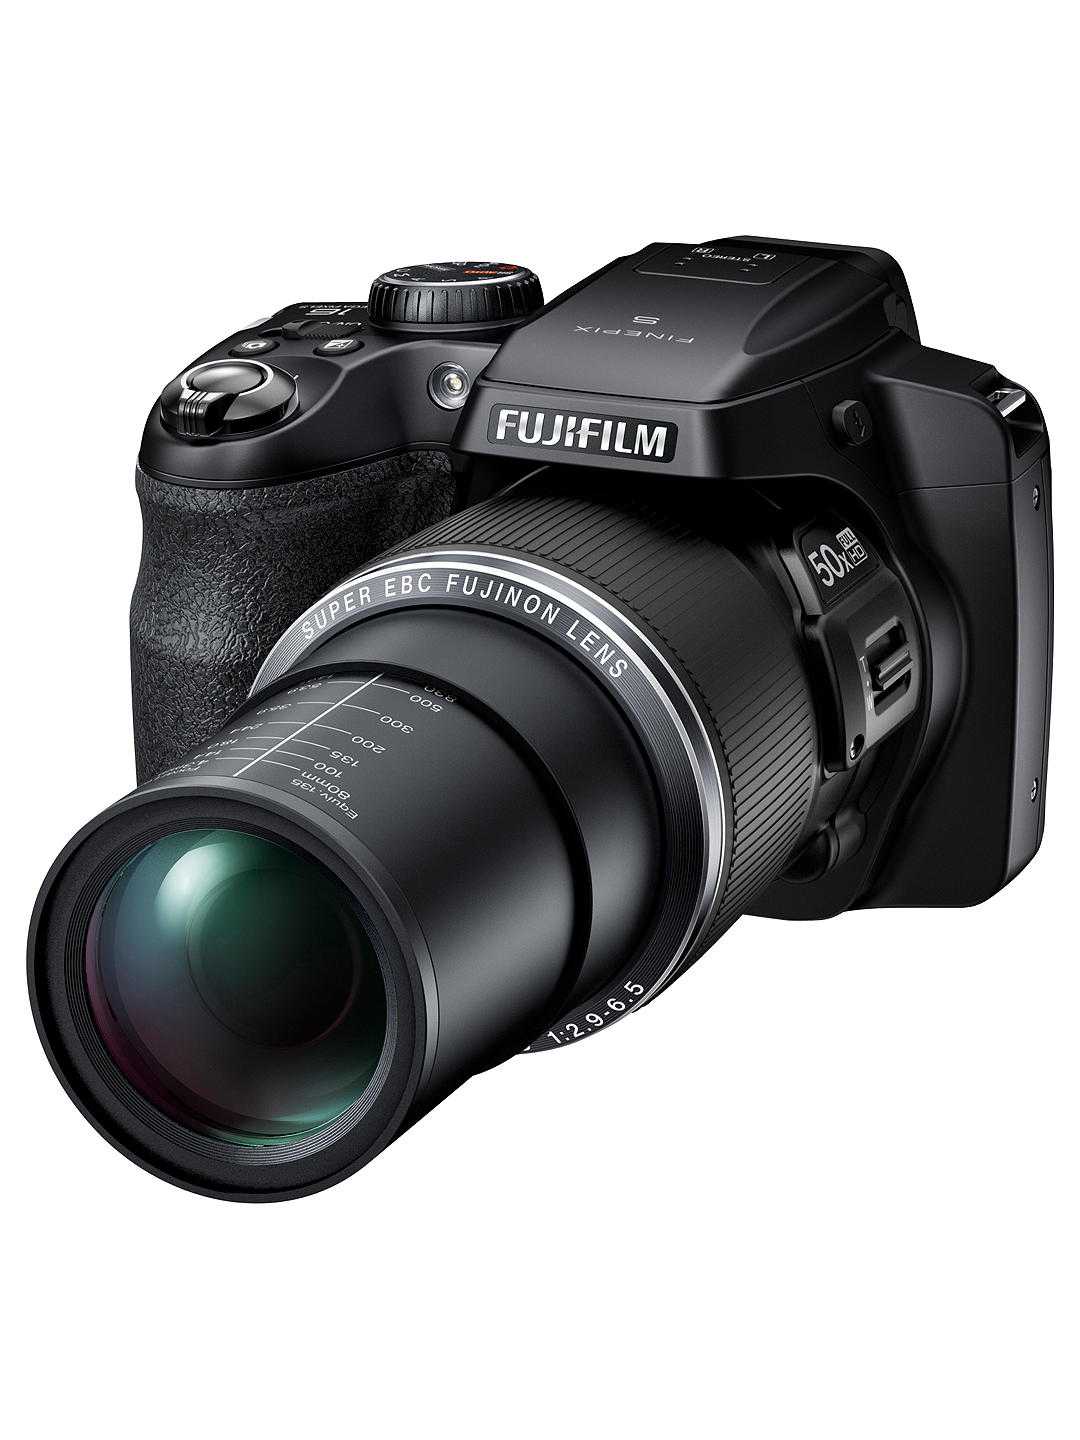 Fujifilm finepix s8400w (черный) - купить , скидки, цена, отзывы, обзор, характеристики - фотоаппараты цифровые